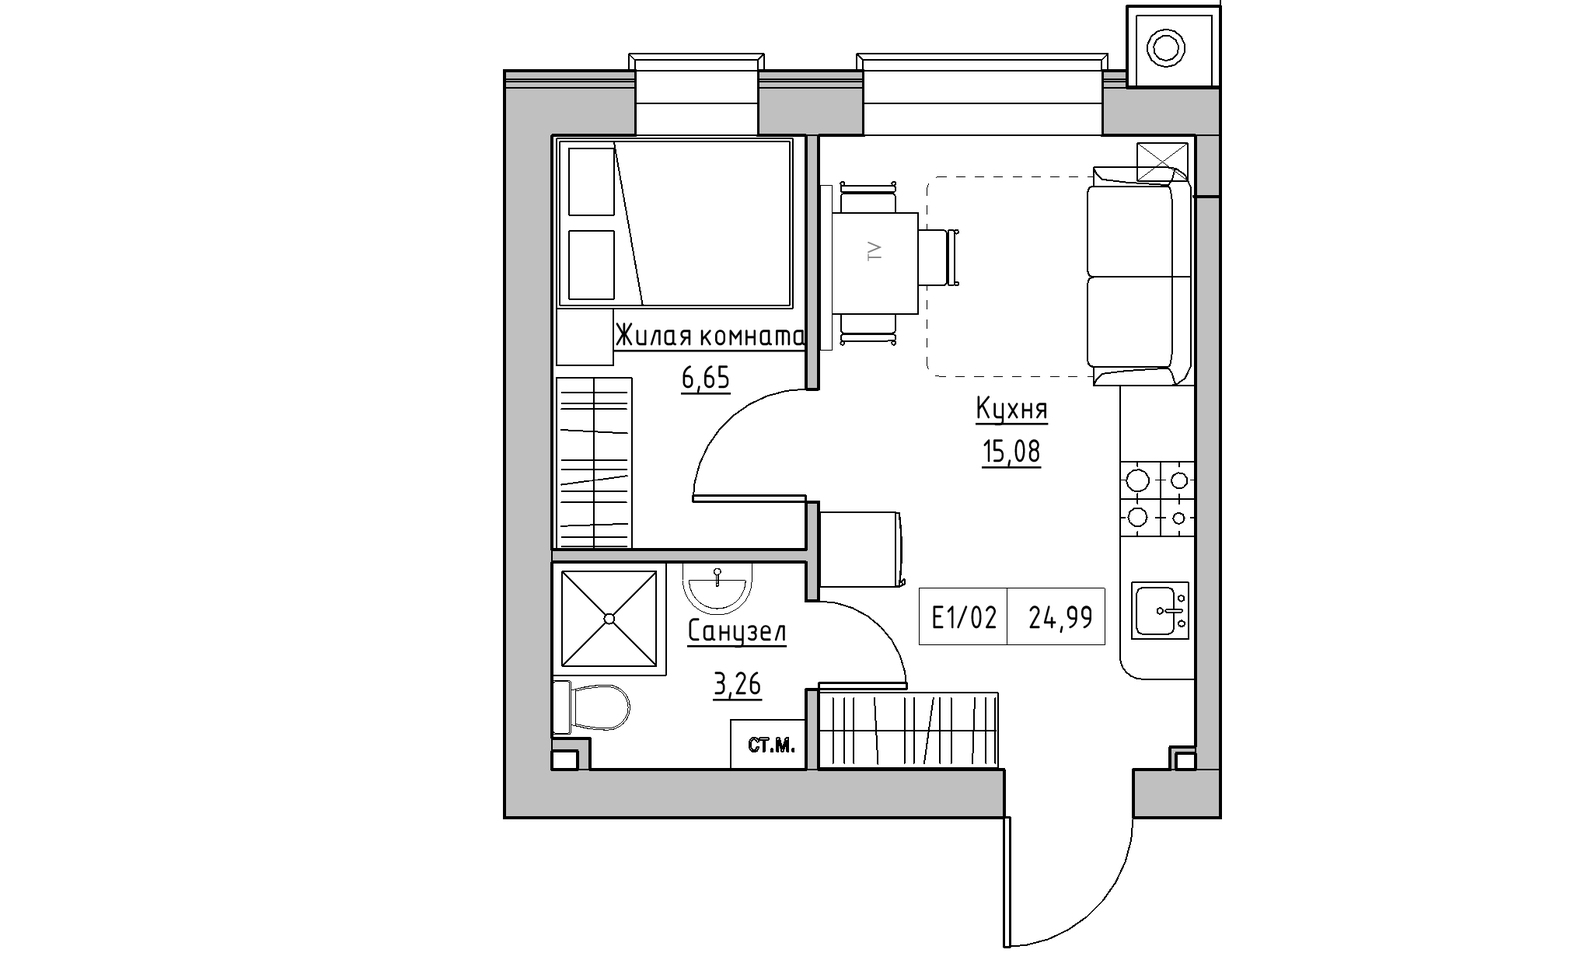 Планировка 1-к квартира площей 24.99м2, KS-014-02/0004.